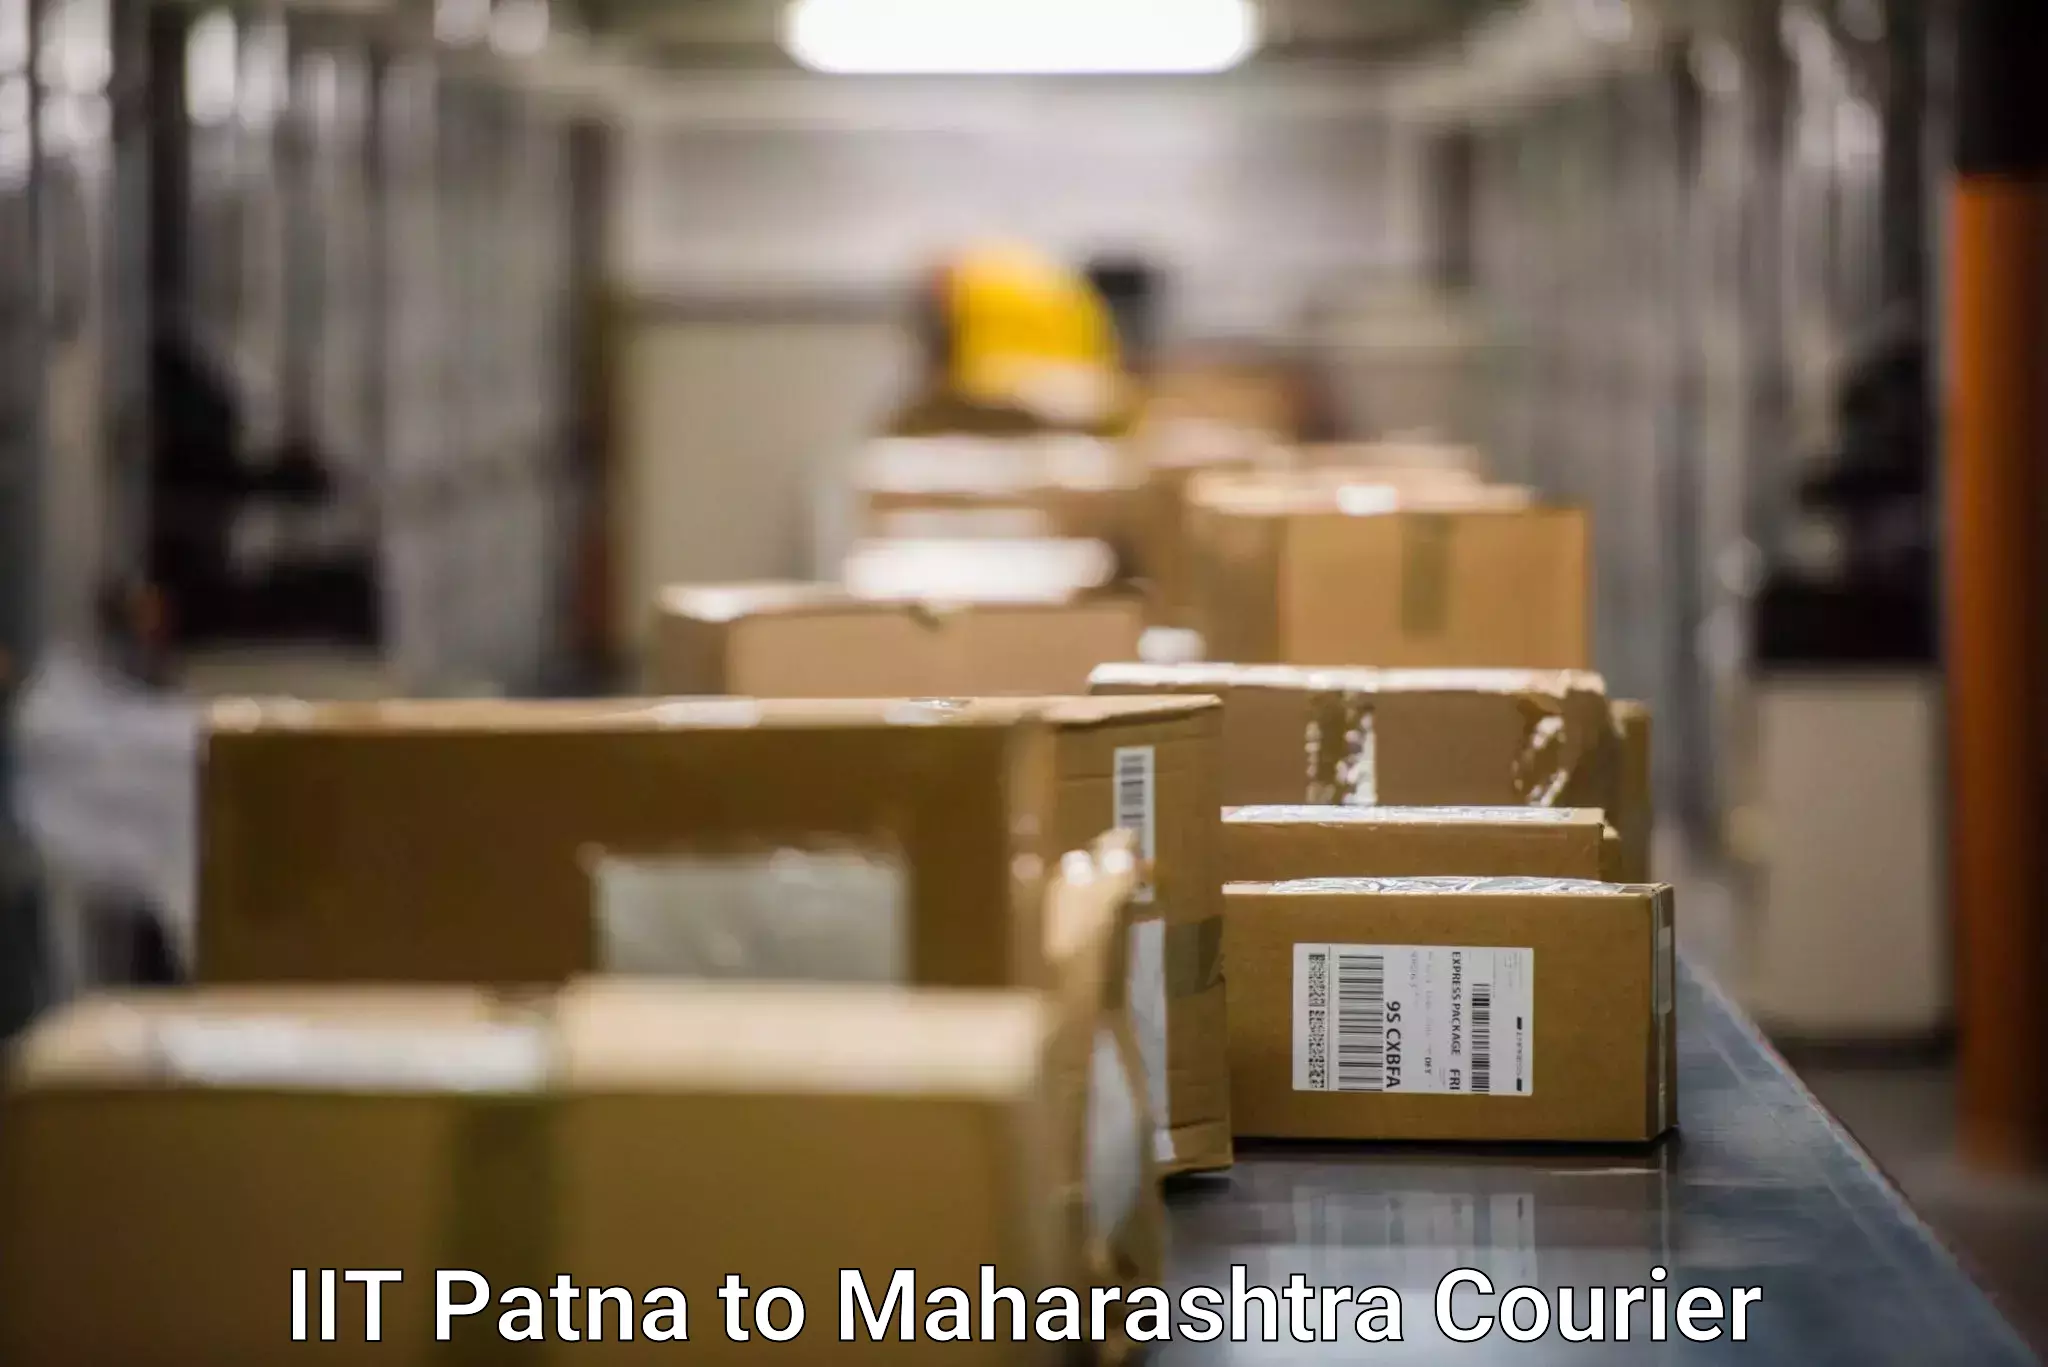 High-capacity parcel service IIT Patna to Dindori Nashik